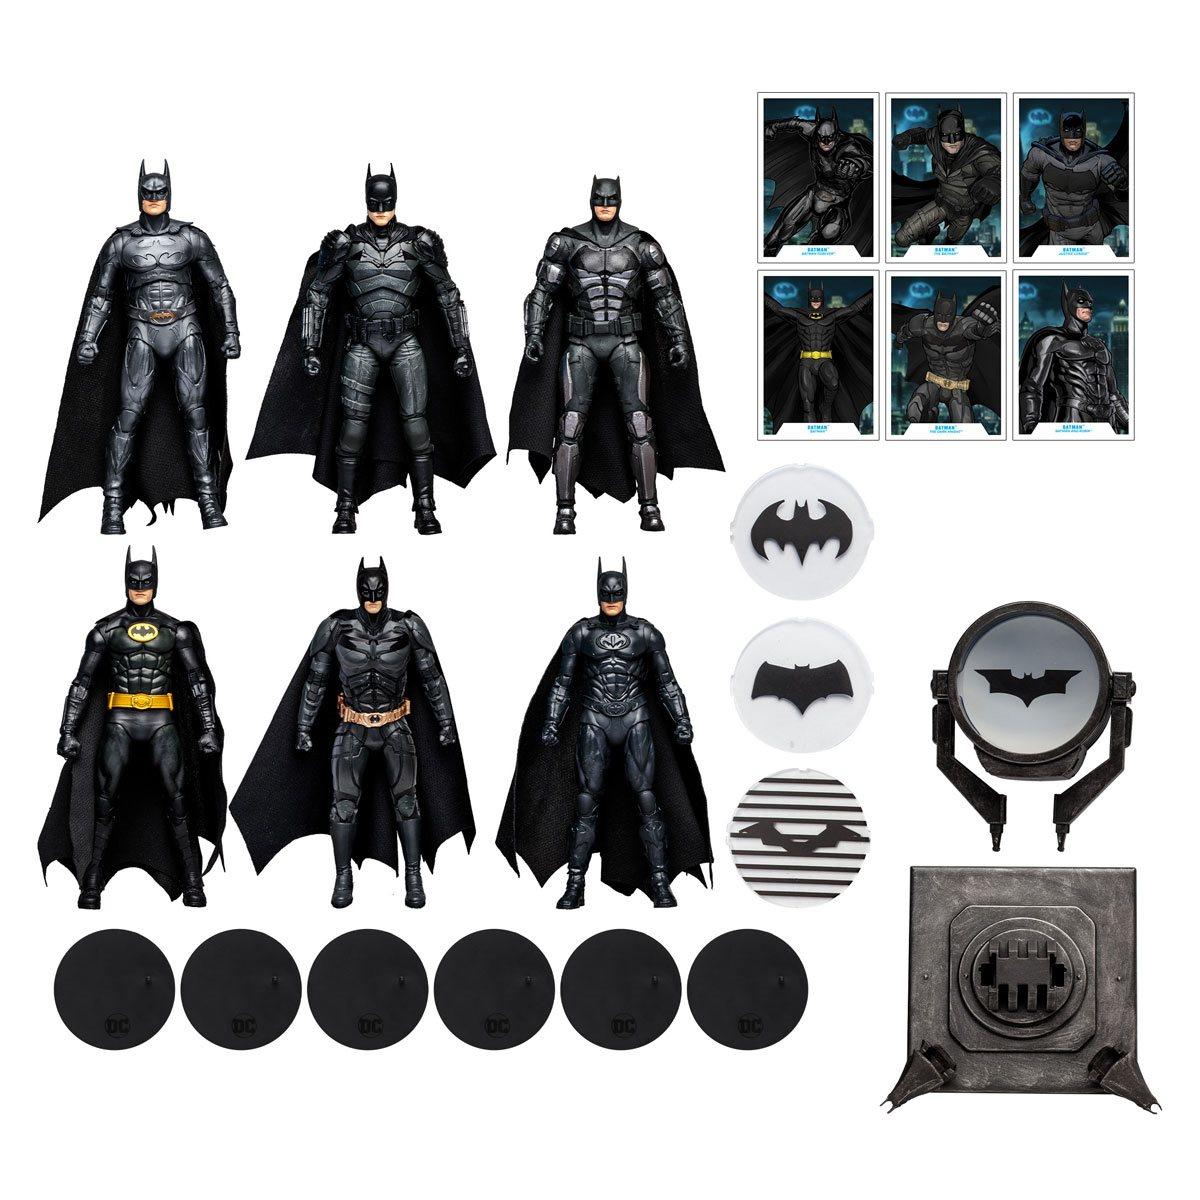 DC Multiverse Batman Movie Collection Set Includes Figures a Bat-Signal